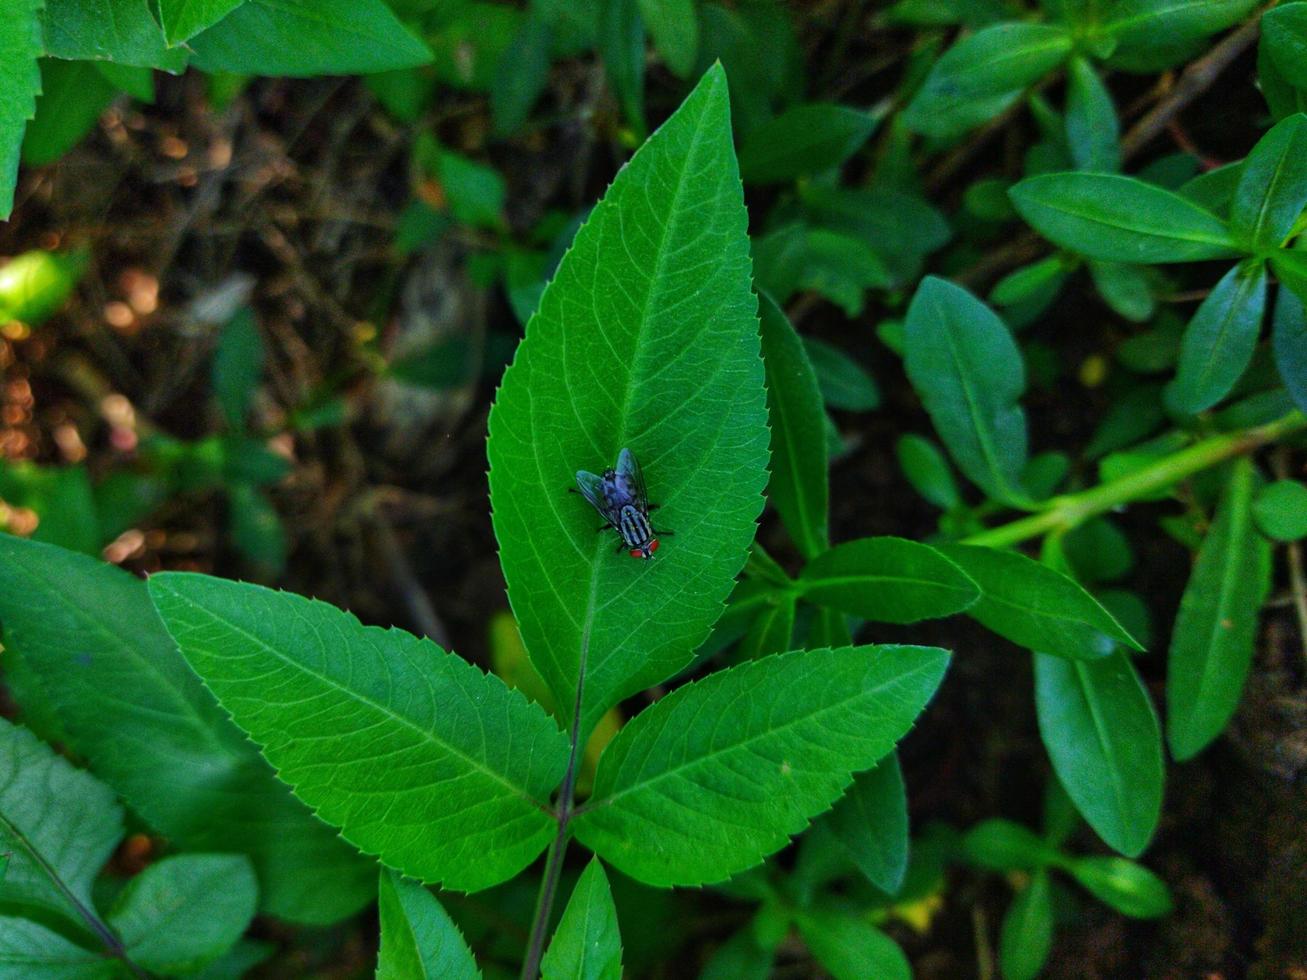 närbild av en flyga uppflugen på en blad, en flyga på en grön blad, ett insekt. abstrakt grön textur, natur grön tona bakgrund. bevingad djur. foto